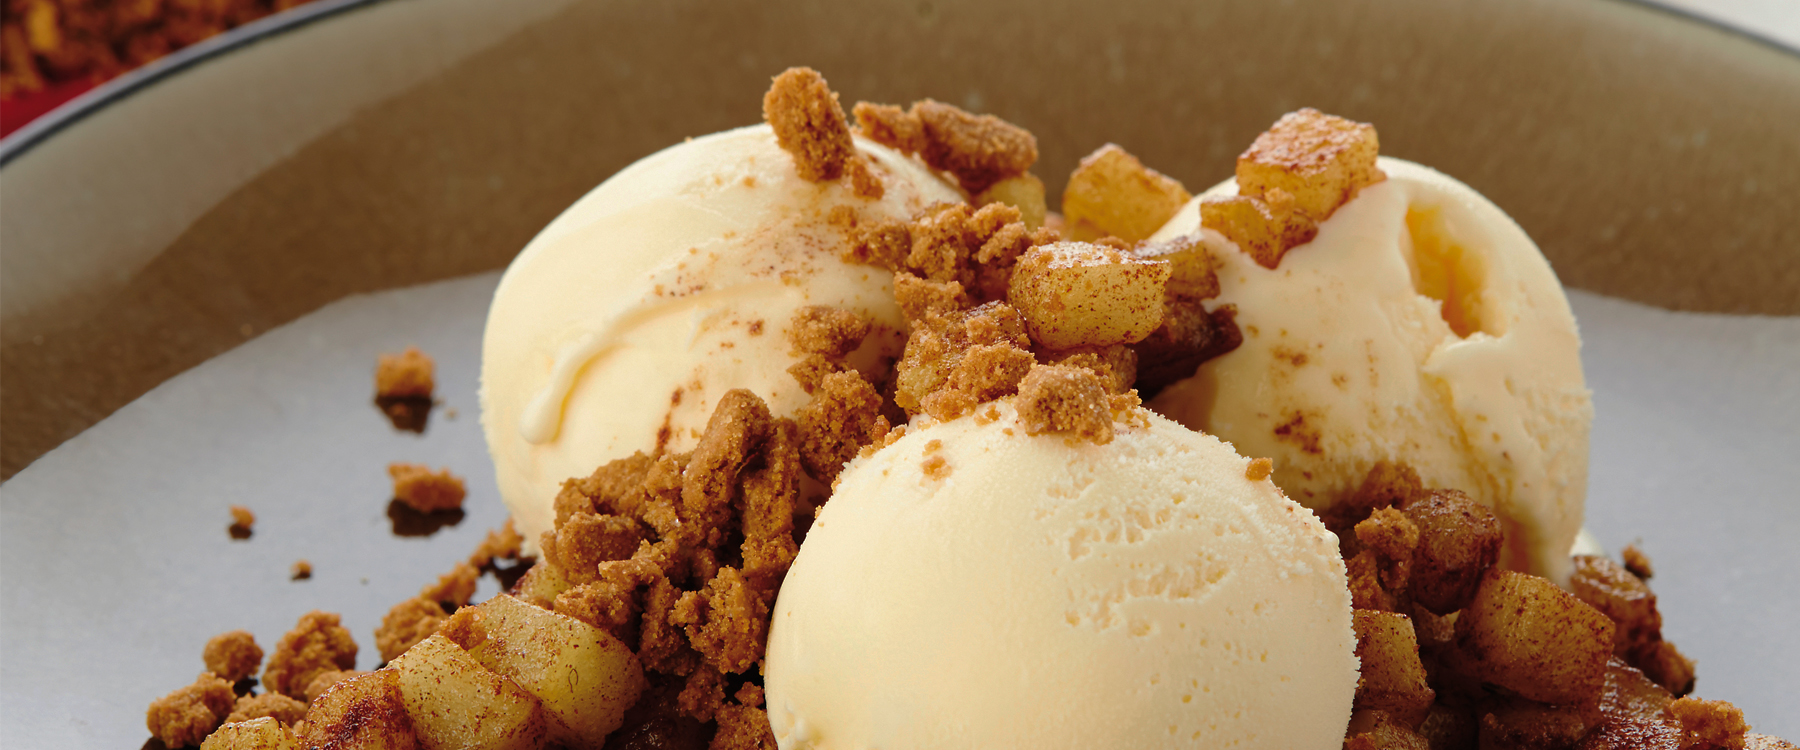 Vanille-ijs met gebakken appeltjes en speculooscrumble | Biscoff